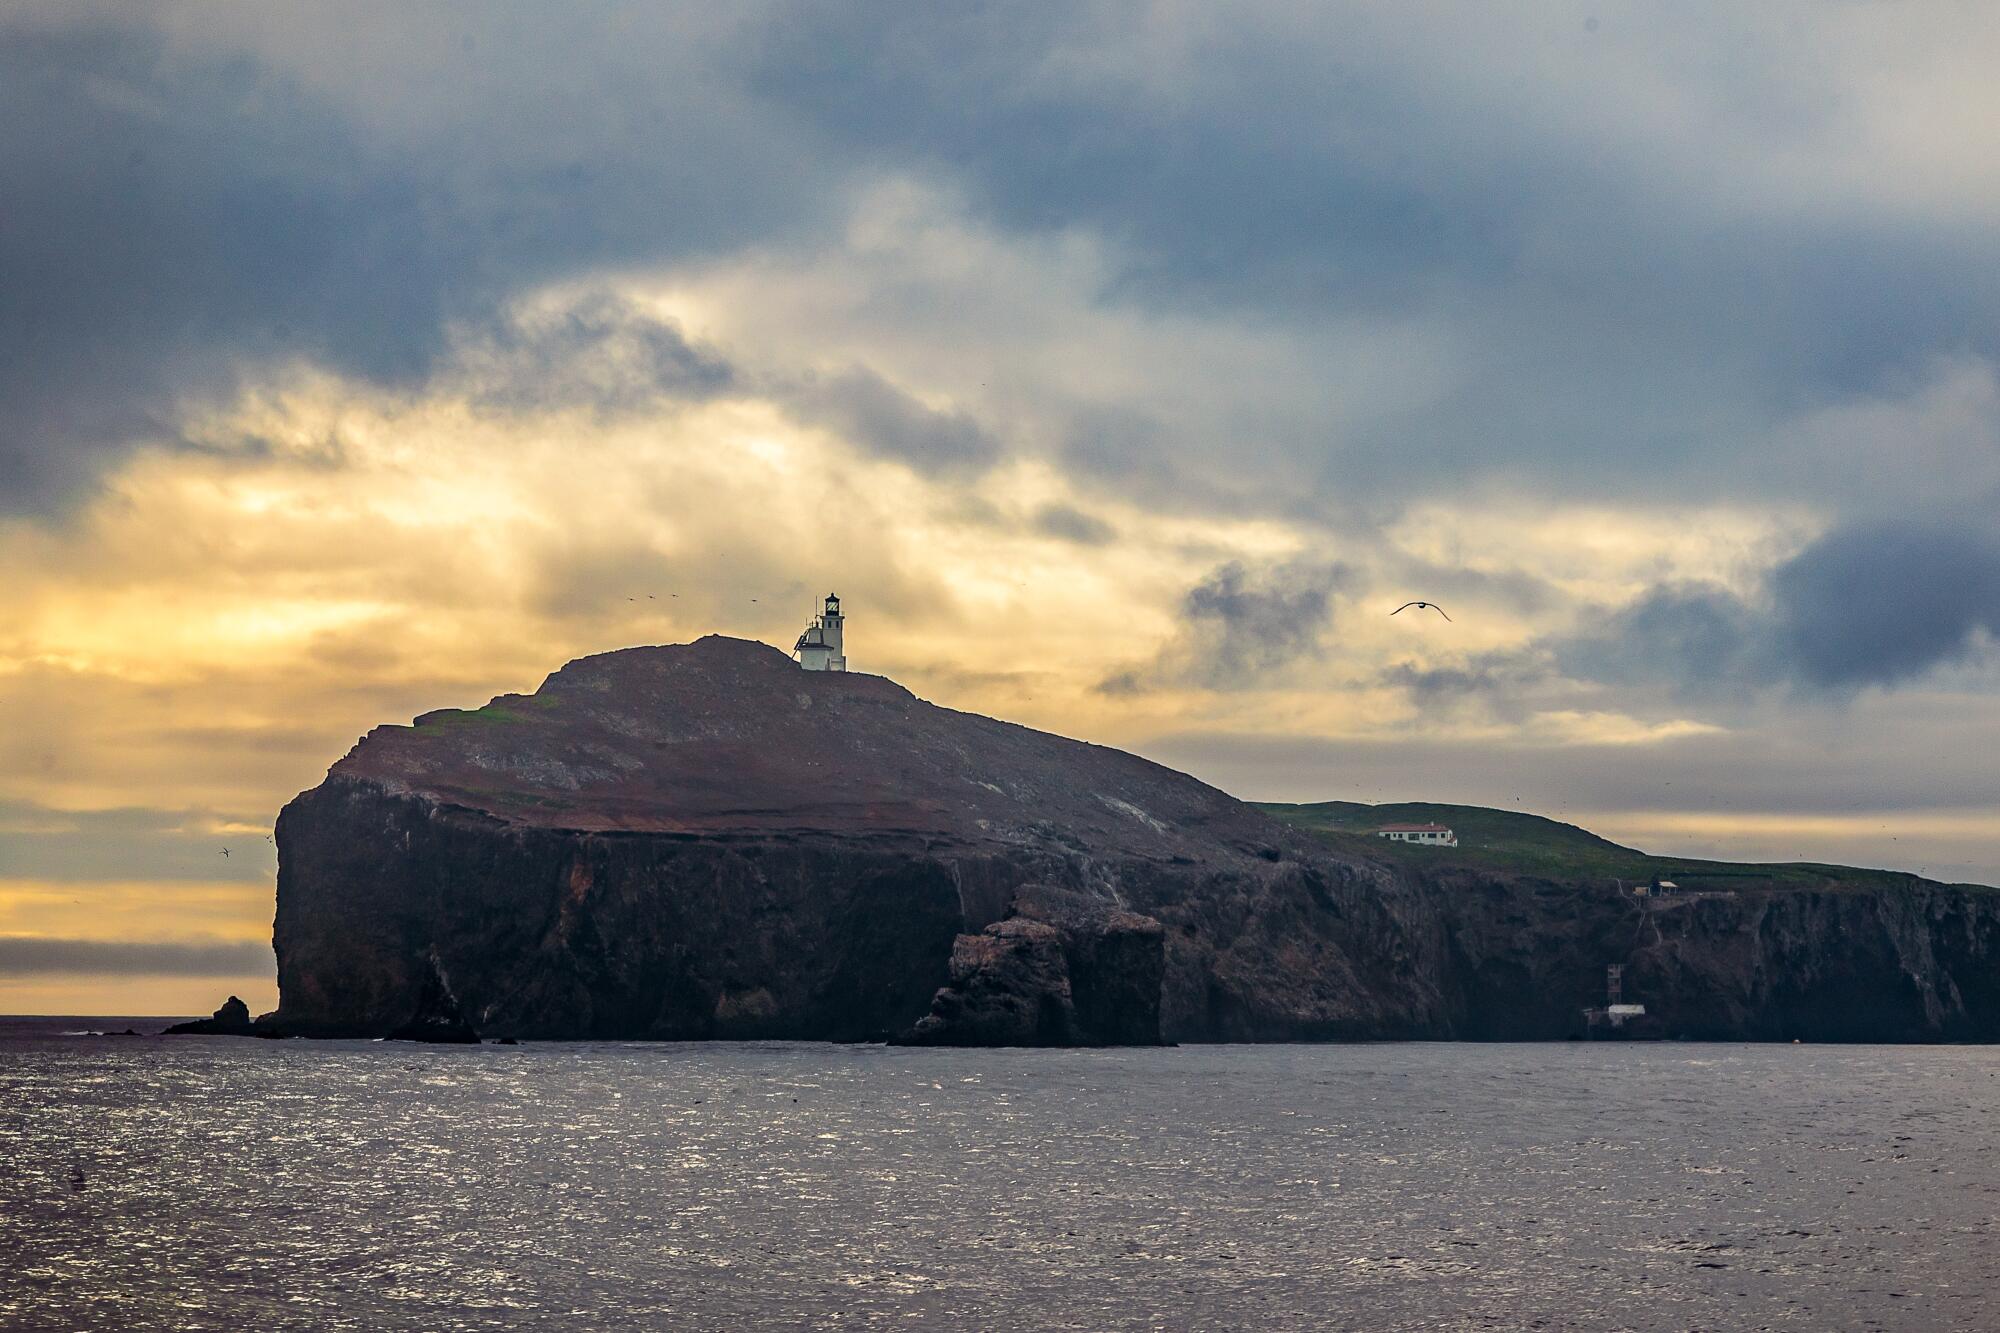 An island at dusk with a lighthouse.